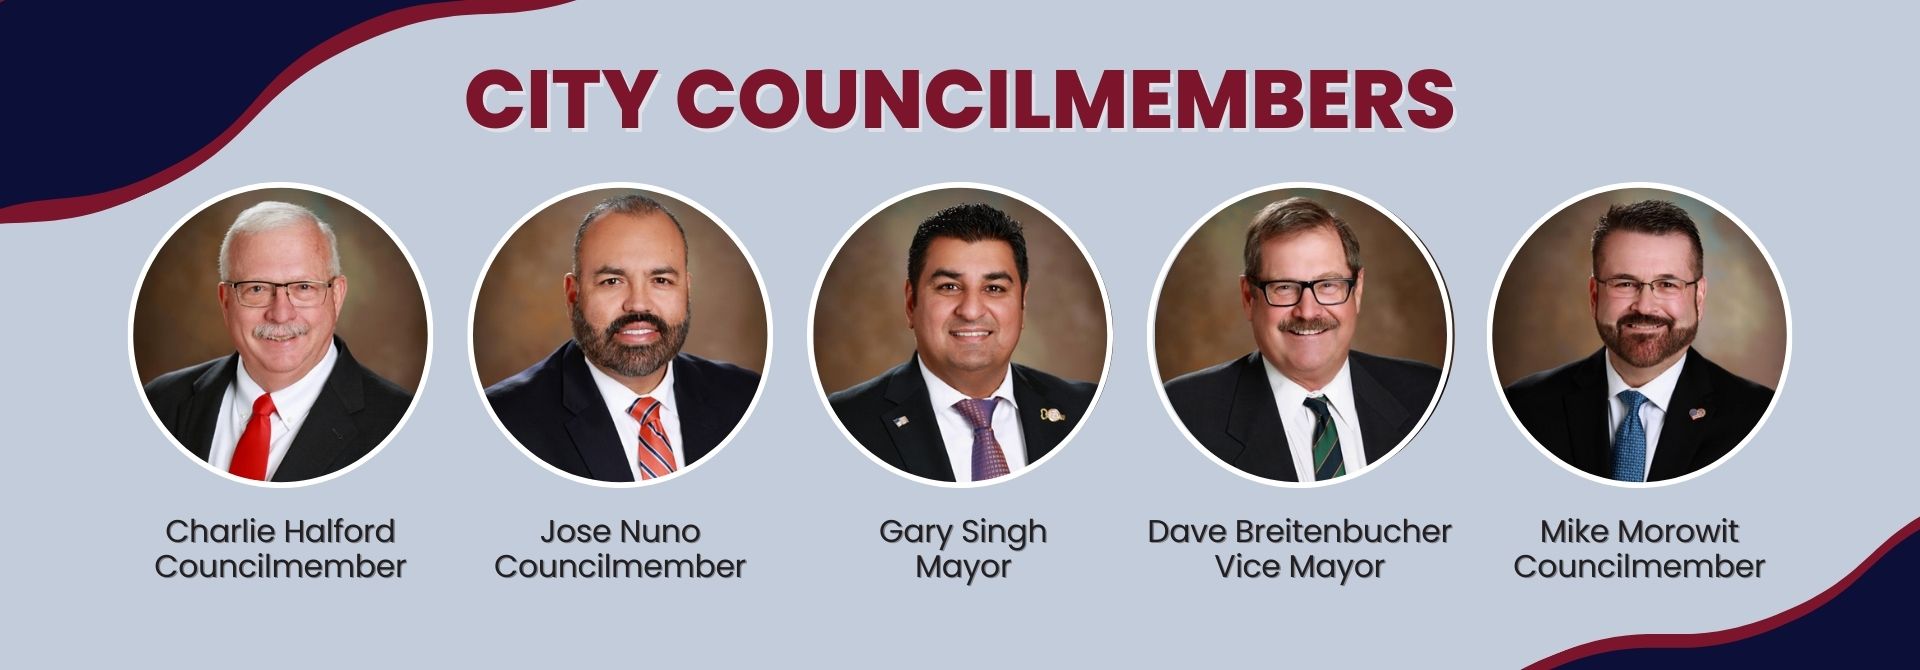 City Councilmembers